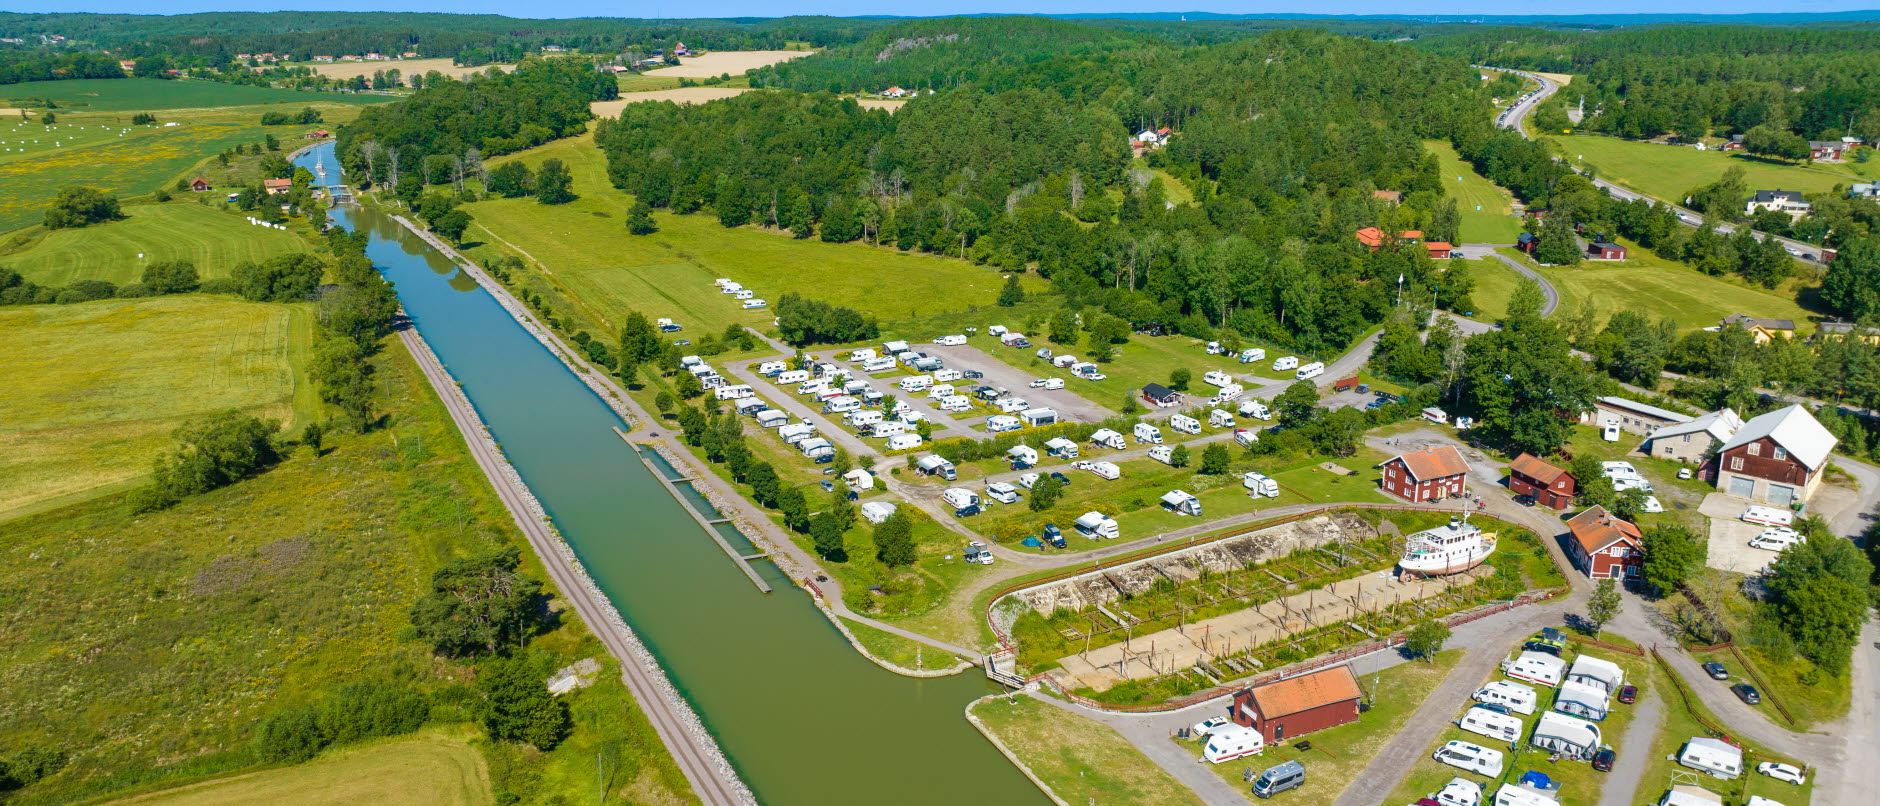 Foto: Flygbild över Göta kanal med Skeppsdockans camping bredvid. Bild visar många husvangnar, husbilar, en torrdocka för båtar samt nröda hus.